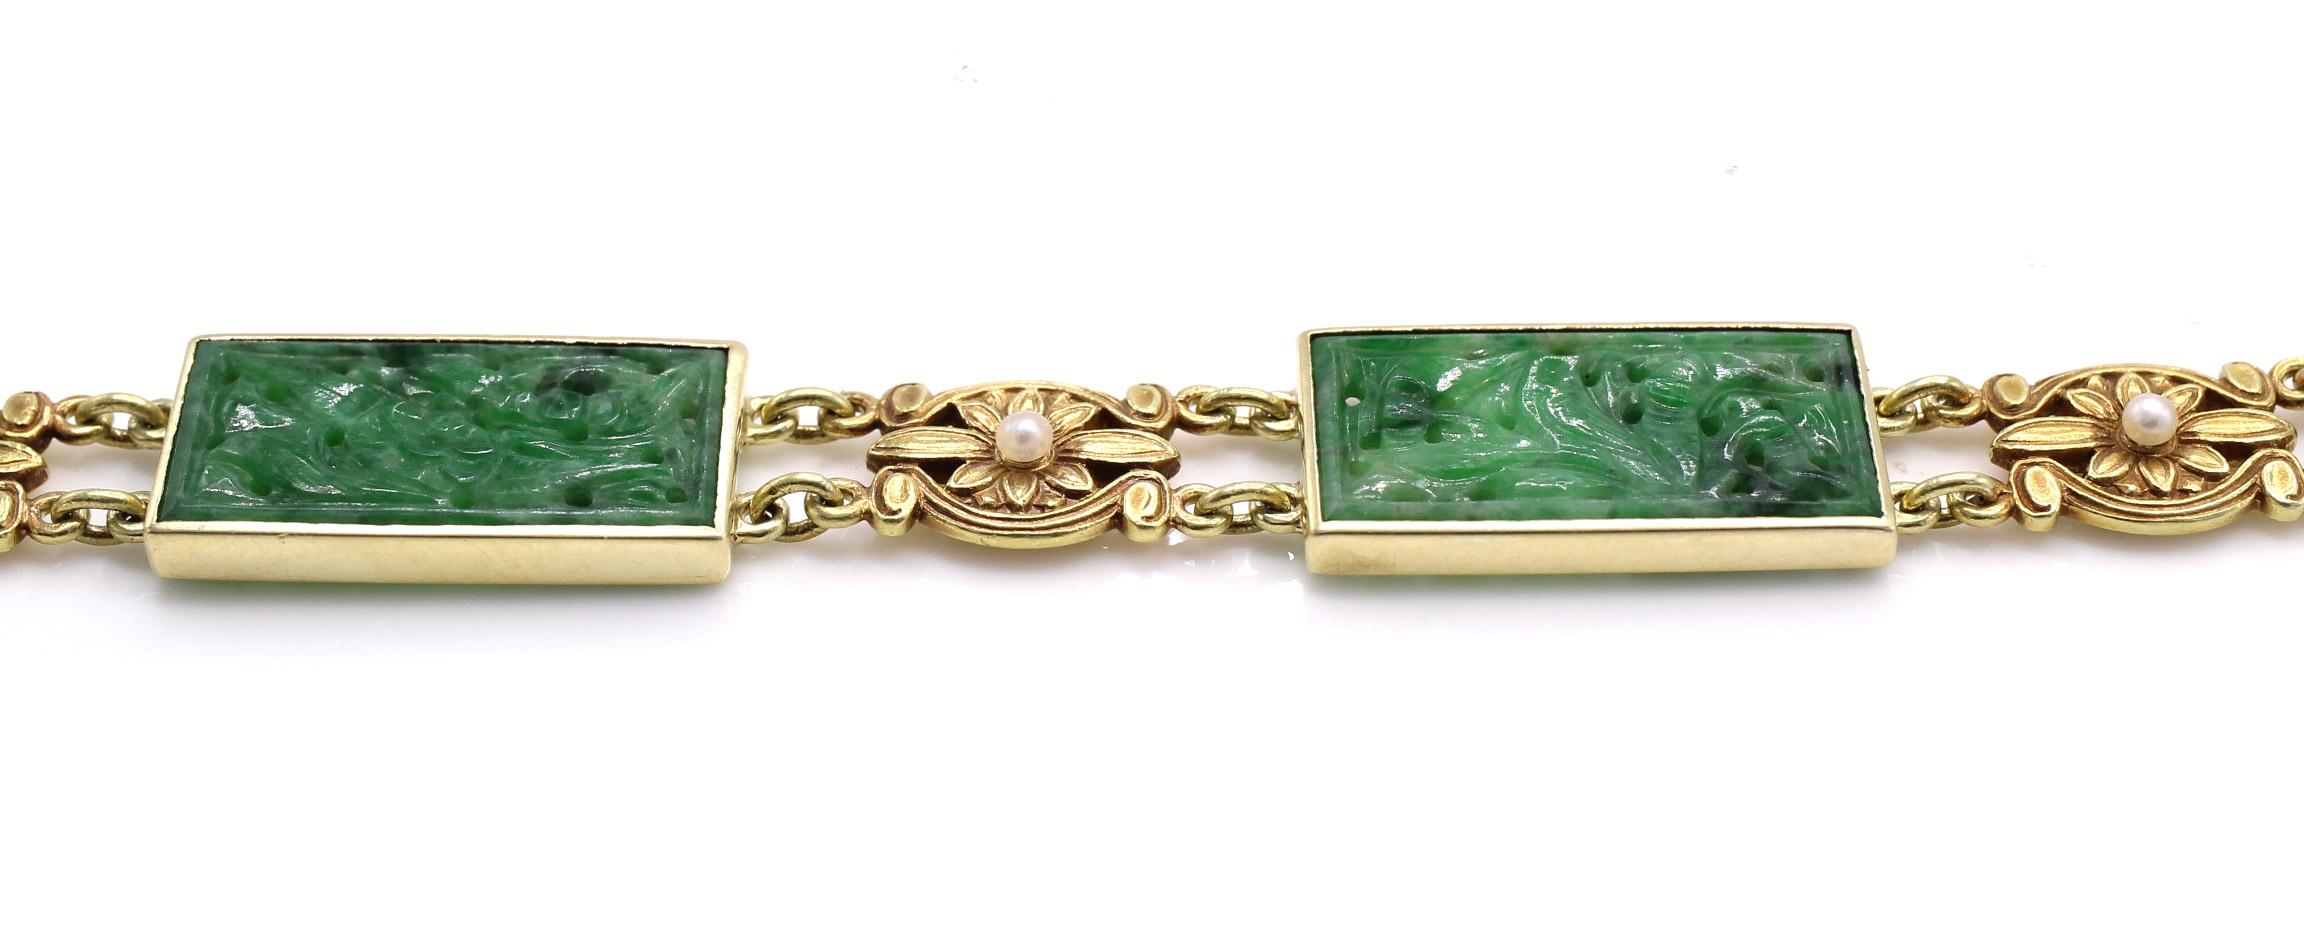 Magnifiquement conçu et réalisé à la main par le célèbre joaillier américain Tiffany & Co, ce bracelet est une véritable œuvre d'art et d'histoire au poignet. 3 pièces rectangulaires de jadéite merveilleusement sculptées sont serties dans un cadre